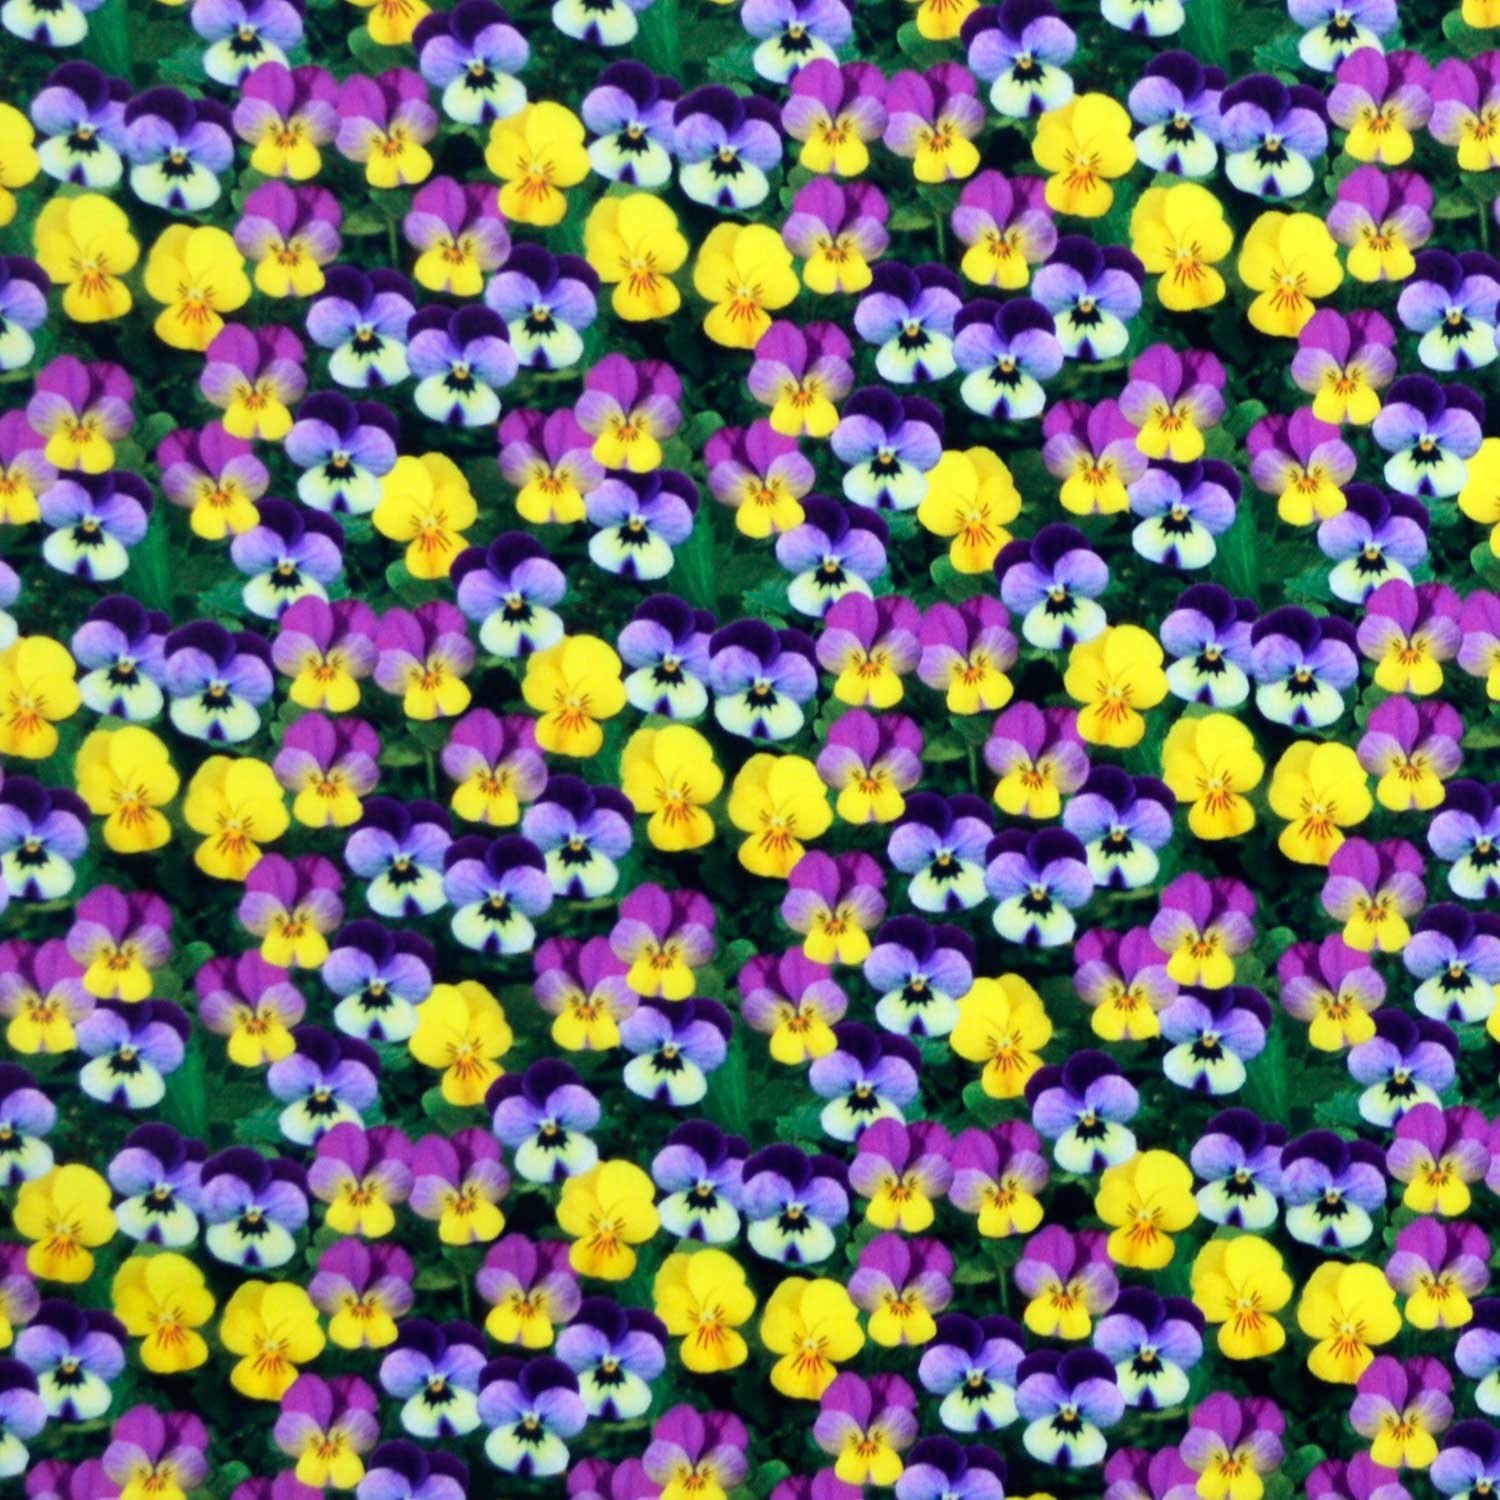 tecido-tricoline-estampado-digital-3d-floral-amor-perfeito-della-aviamentos-tecidos-caldeira-capa-11